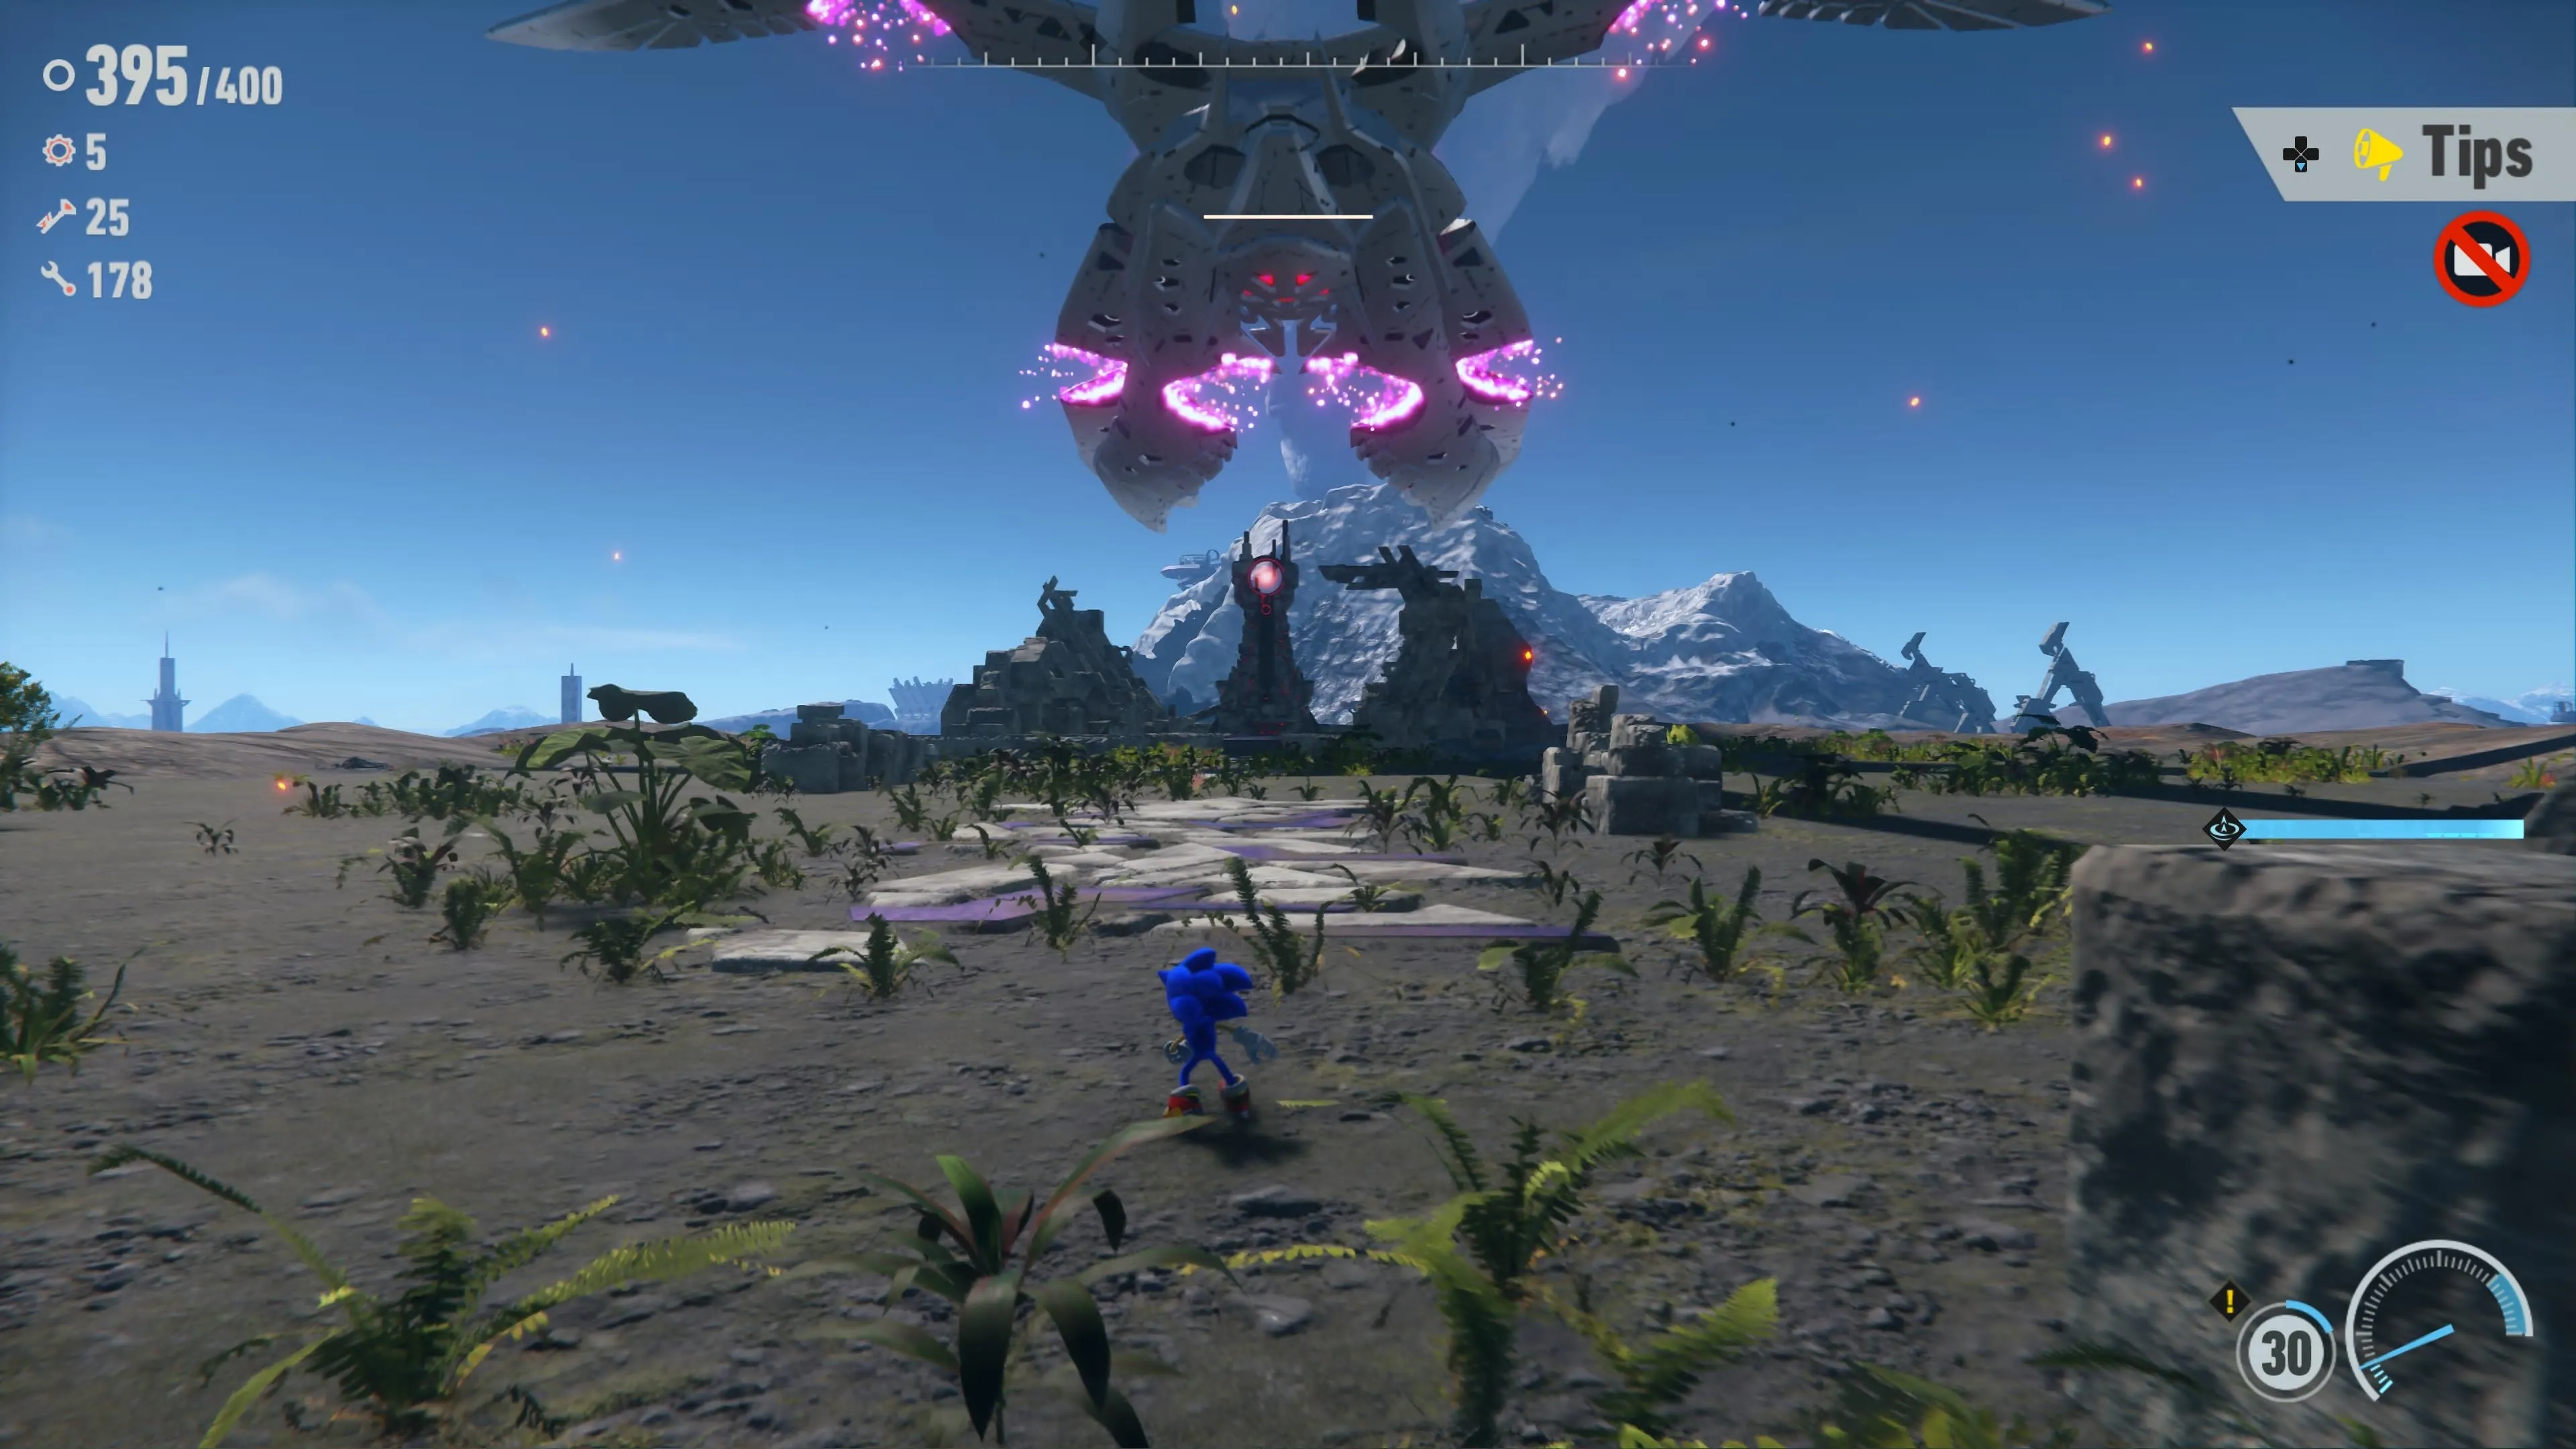 Sonic Frontiers Combat Gameplay Looks Fine - The Escapist